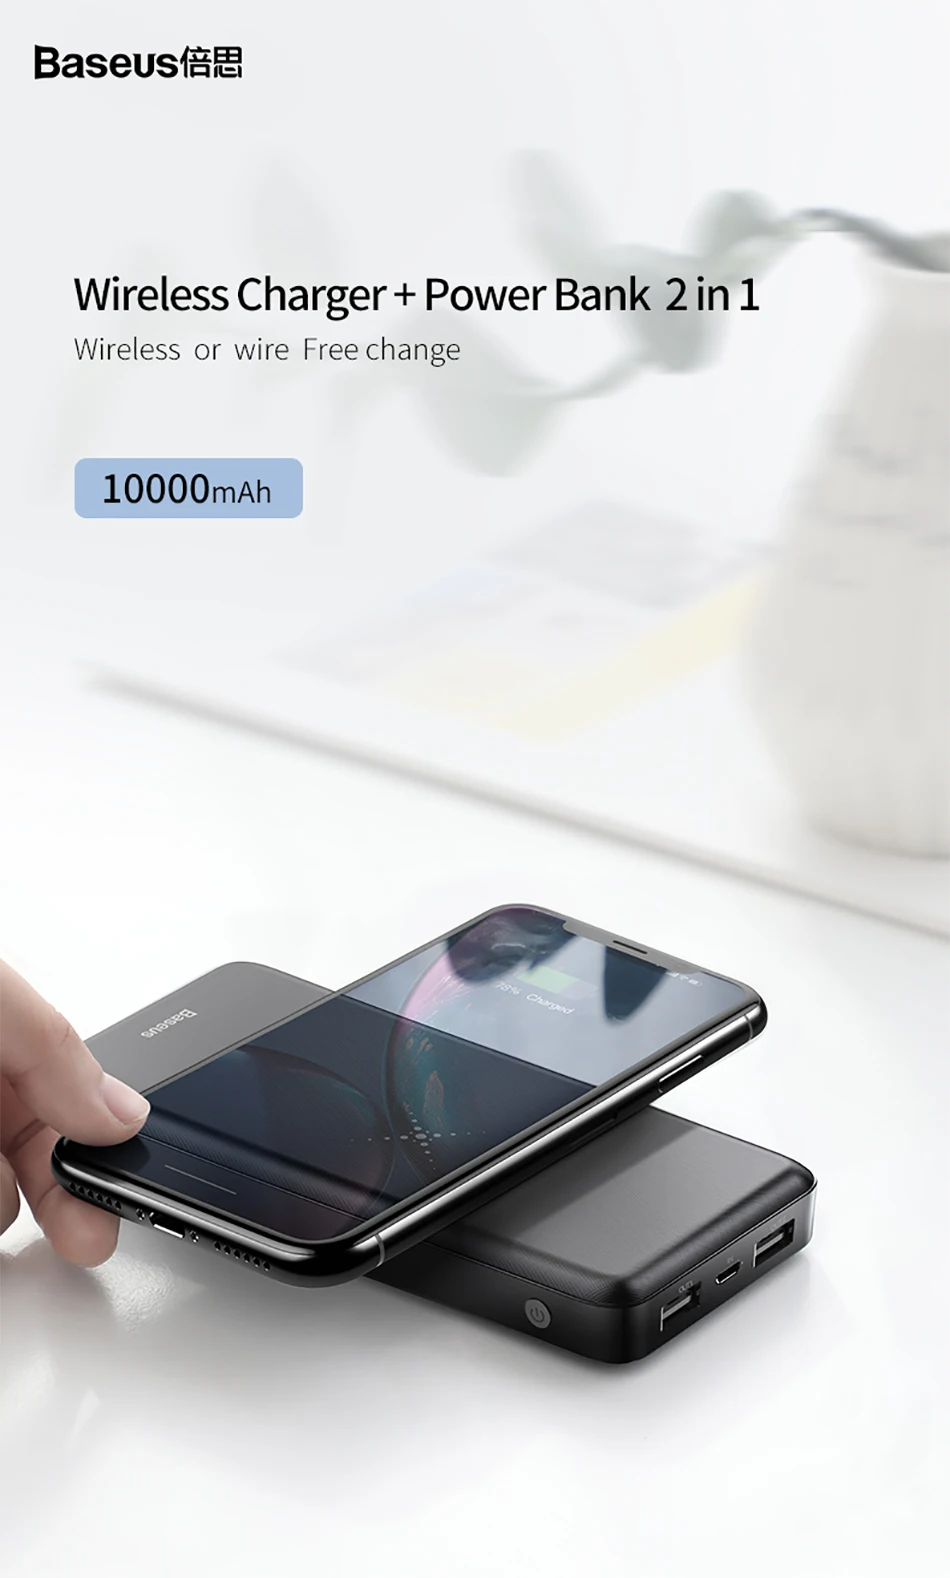 Baseus 10000 мАч беспроводной внешний аккумулятор для iPhone Android зарядное устройство QI Беспроводное зарядное устройство mi cro Usb внешний аккумулятор для iPhone Xiaomi mi 9